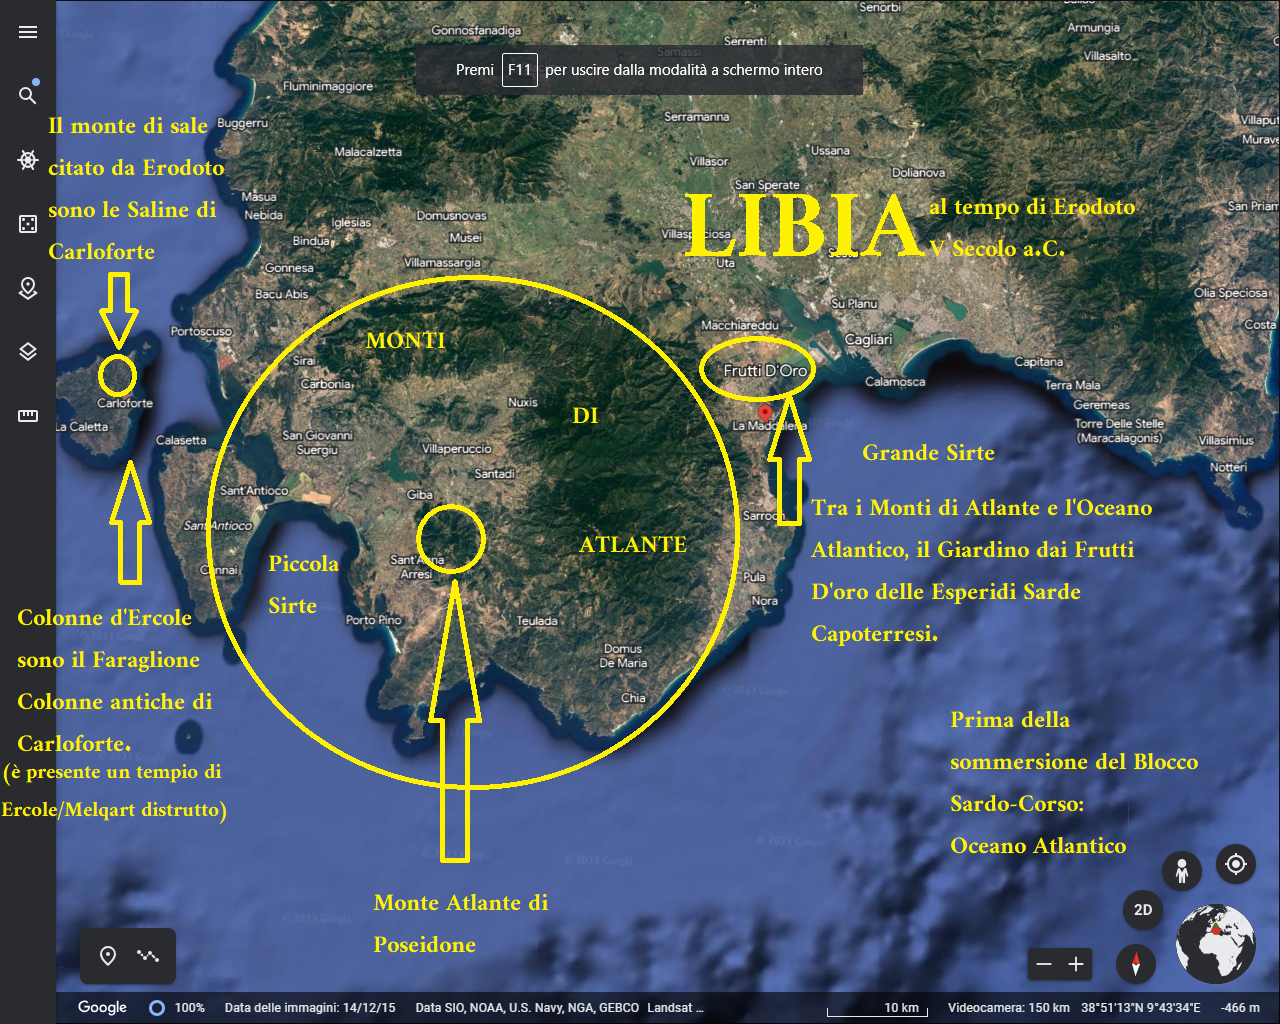 Erodoto per Libia intendeva il Sud Sardegna e non la Libia Africana